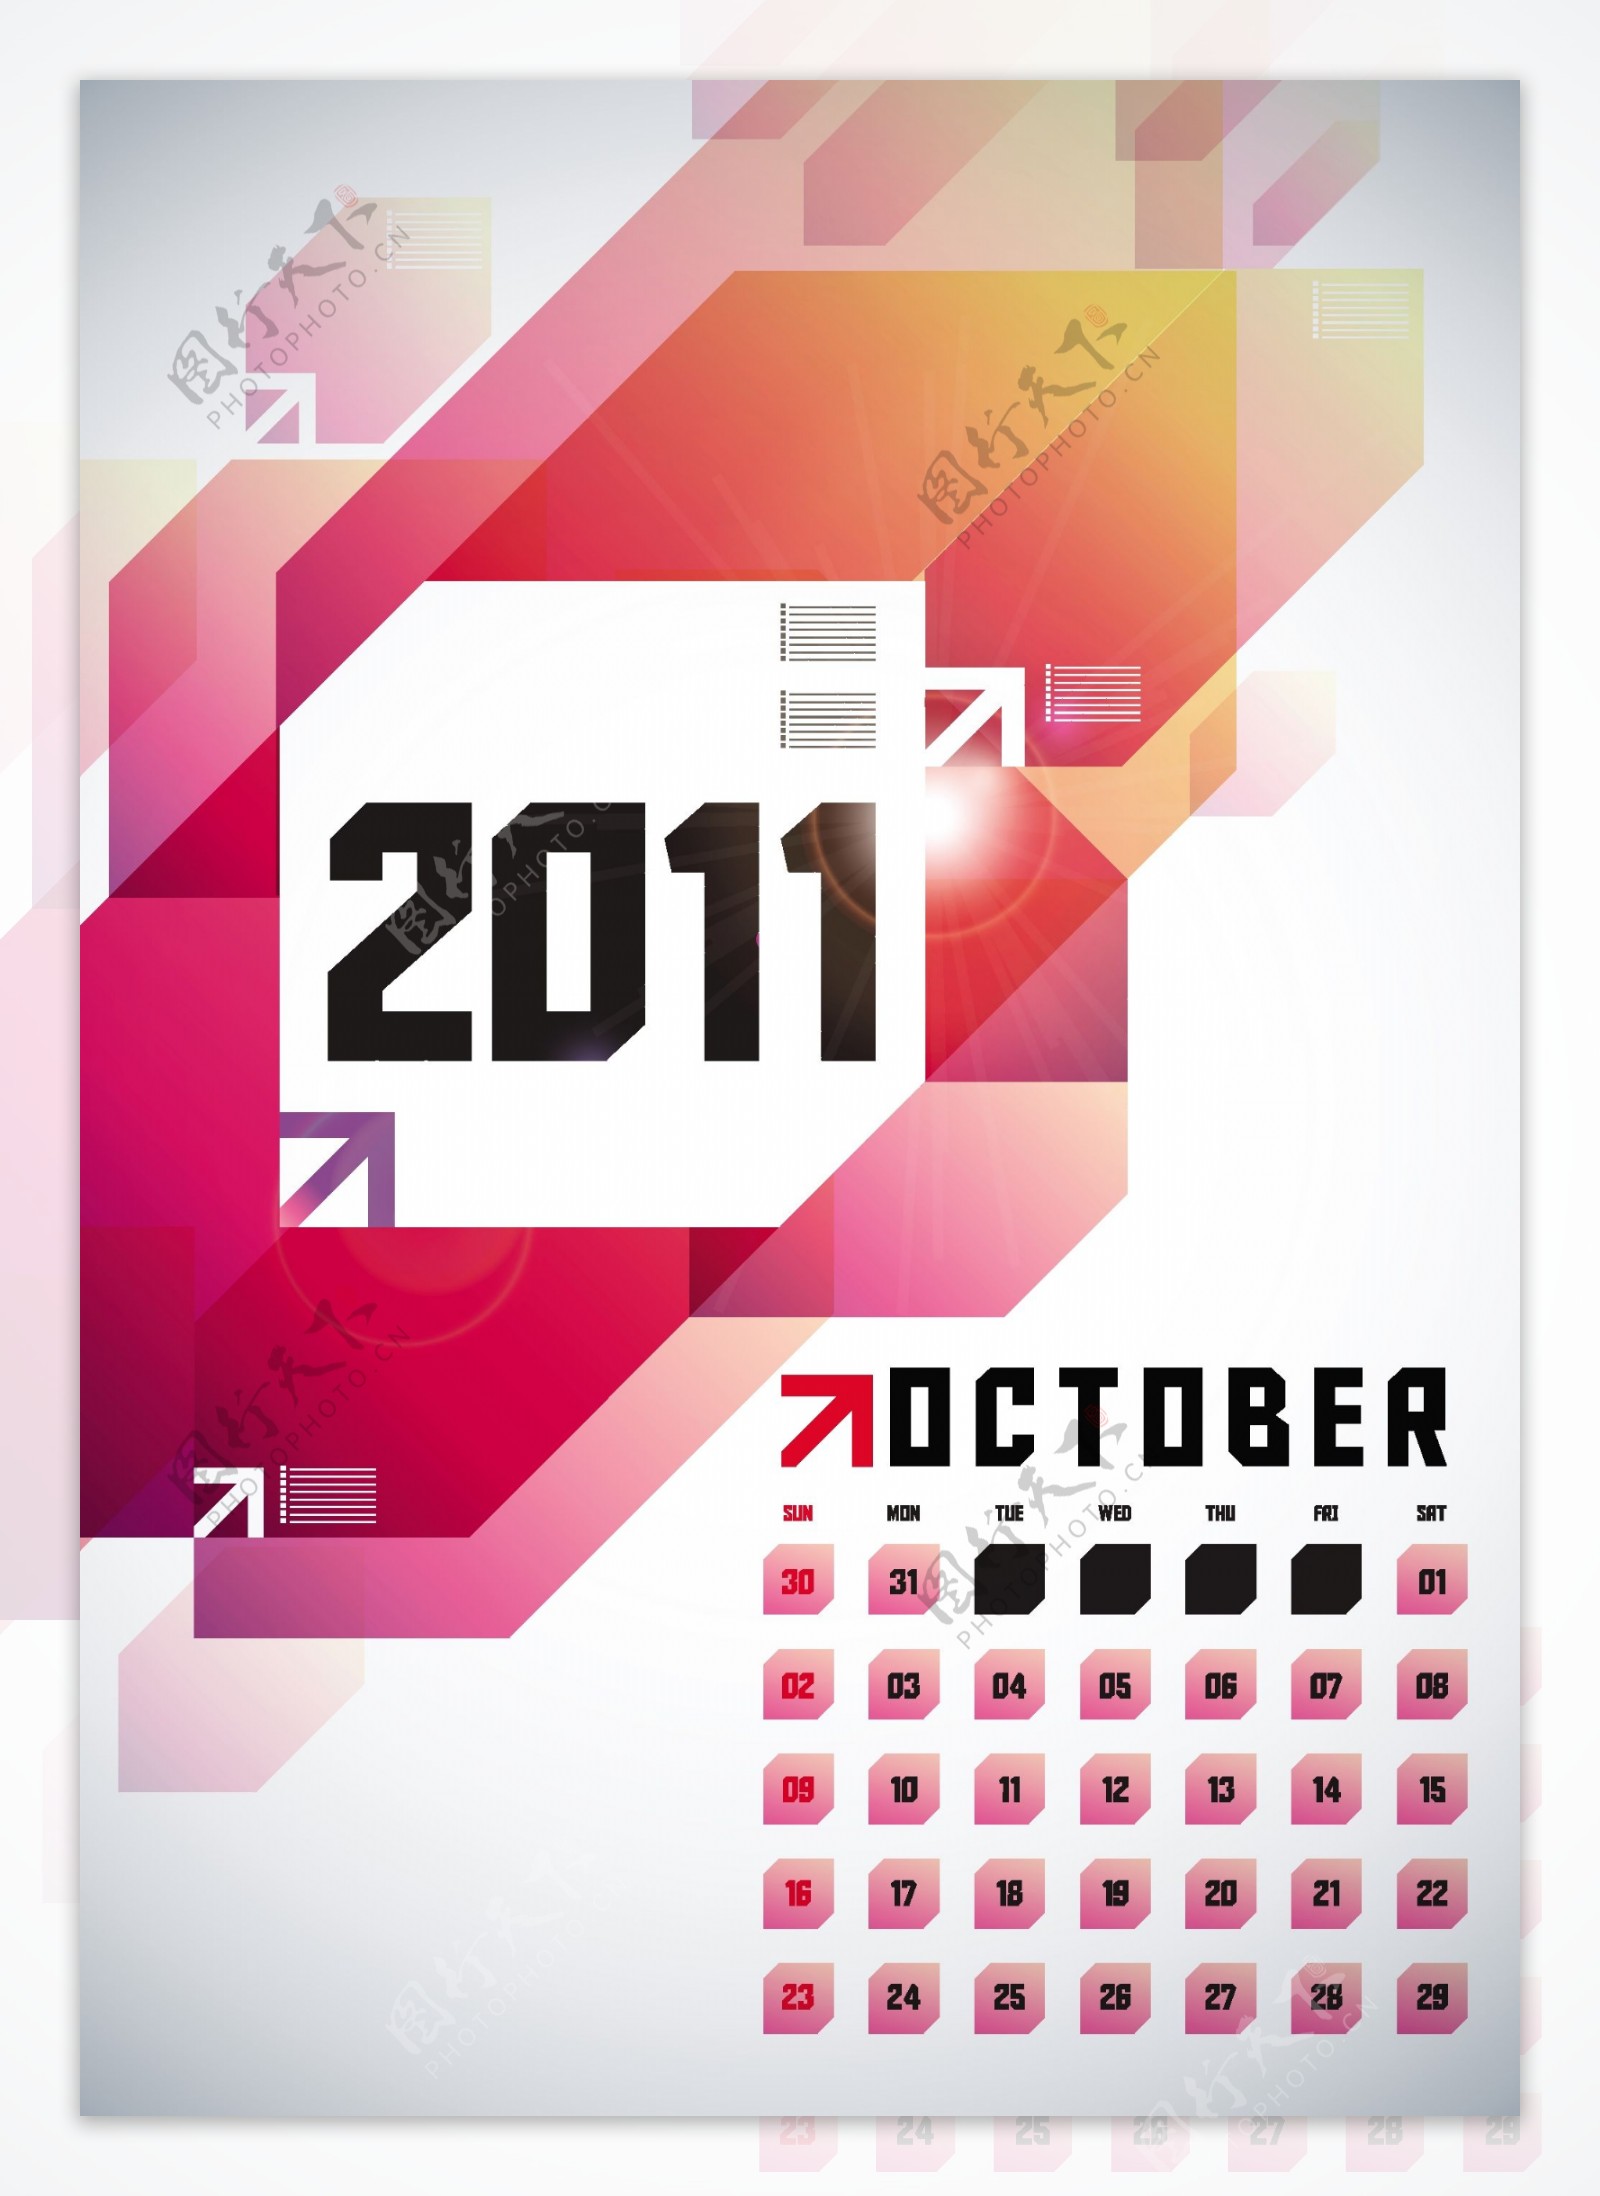 2011十月日历设计